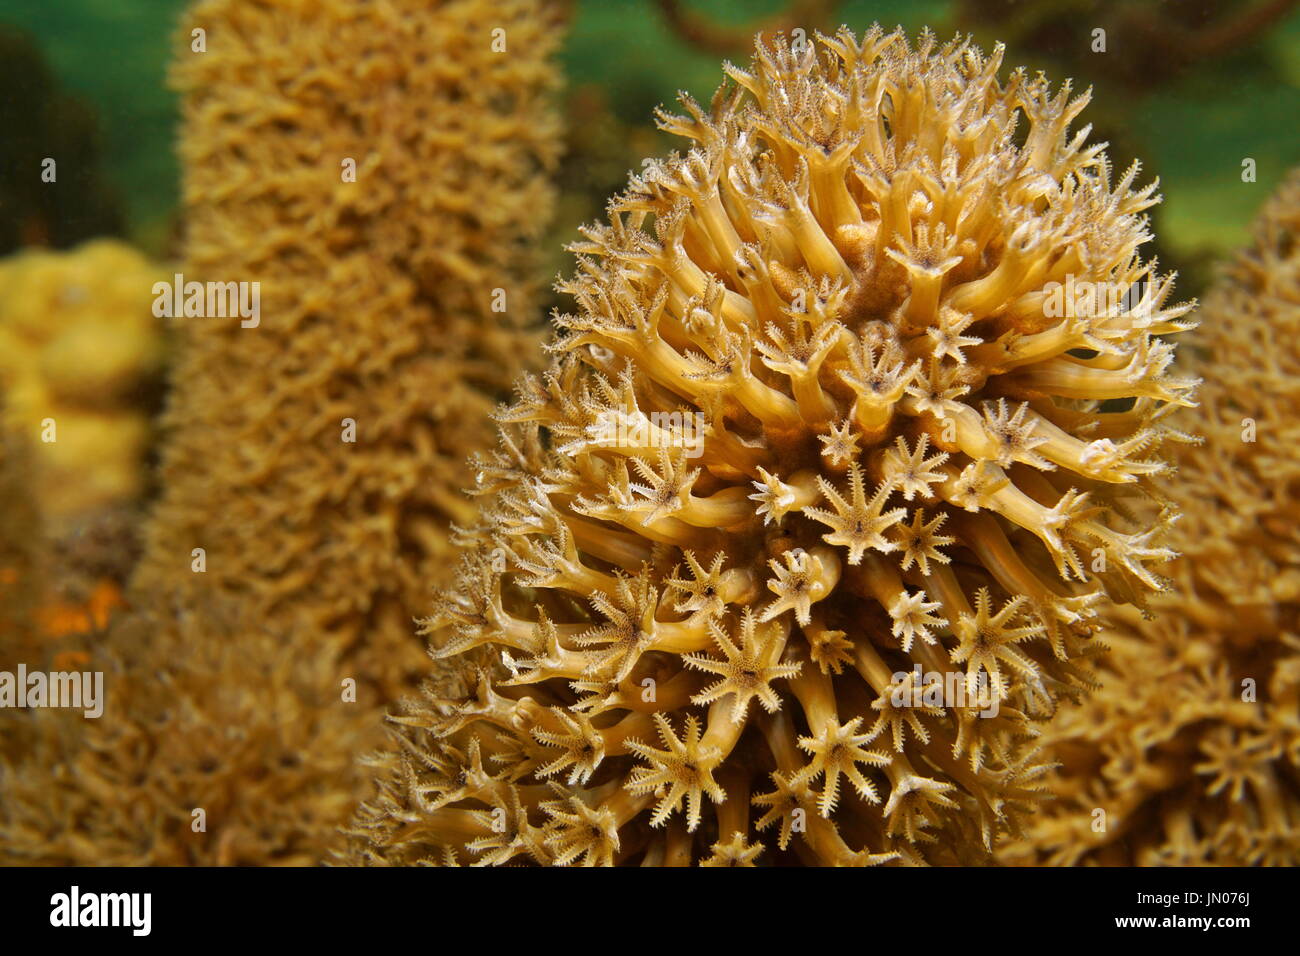 Les polypes de corail mou, fente Plexaurella macro mer interstitielle gorgones octocoral tige sous l'eau, dans la mer des Caraïbes Banque D'Images